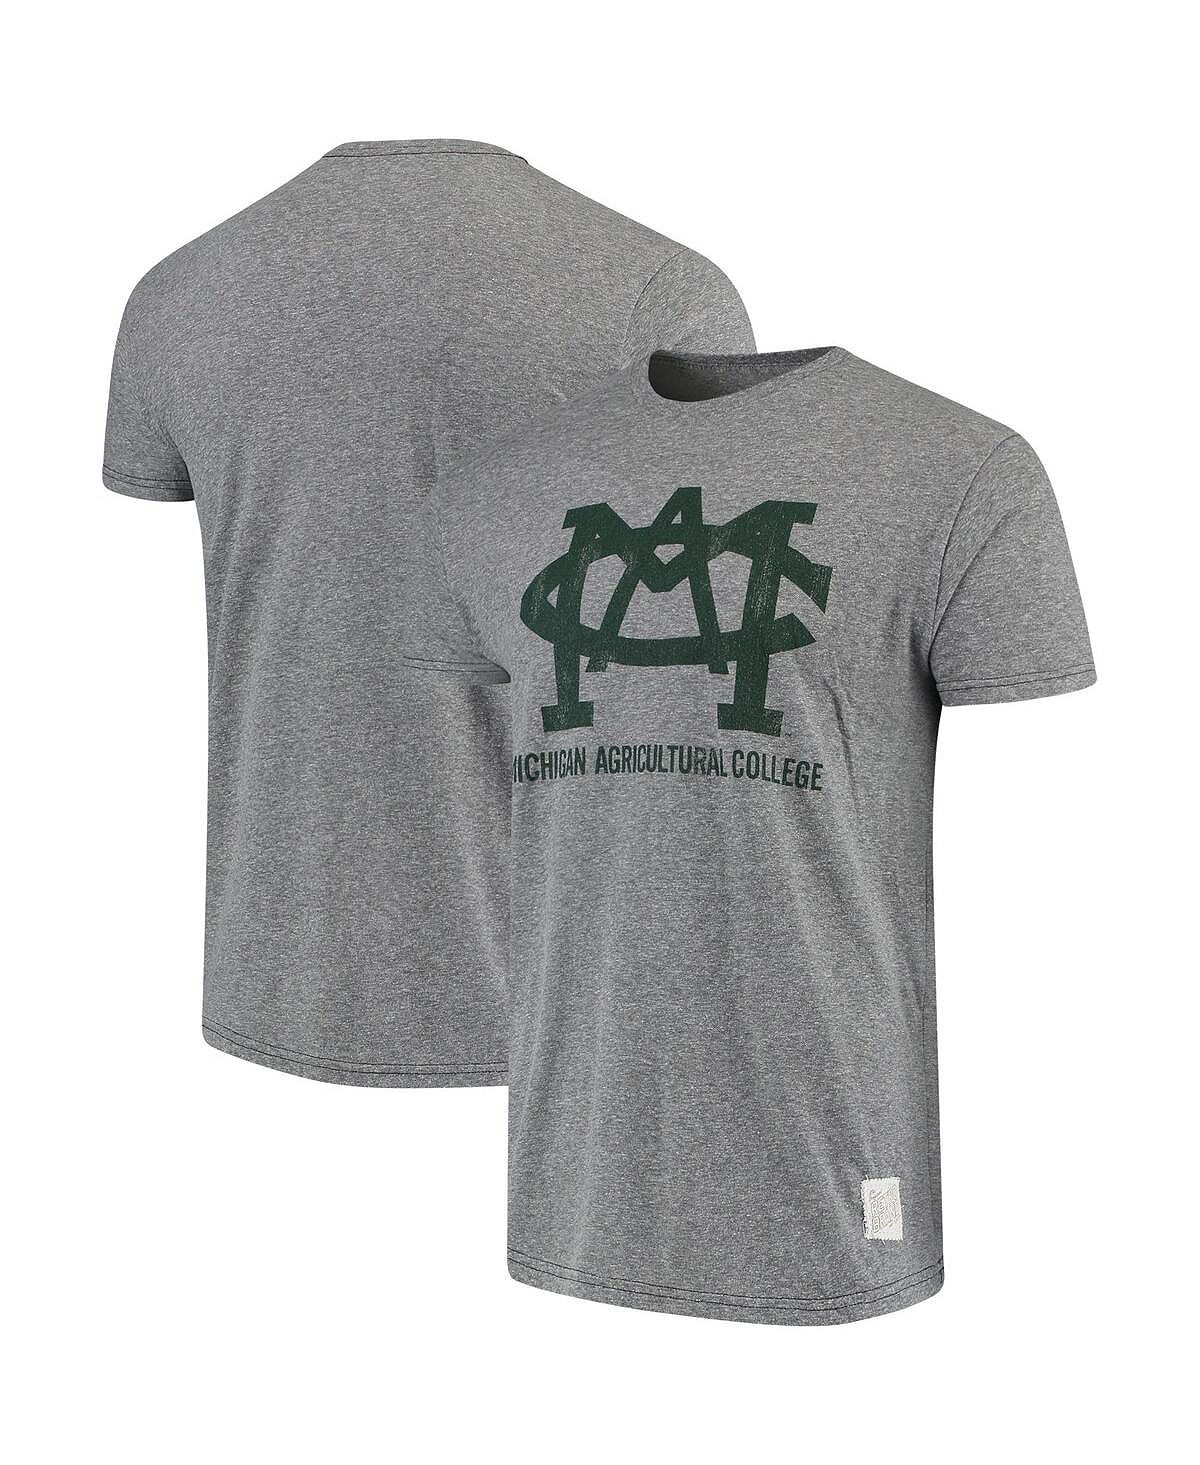 цена Мужская меланжевая серая футболка штата мичиган спартанцы мичиганского сельскохозяйственного колледжа tri-blend в винтажном стиле Original Retro Brand, мульти